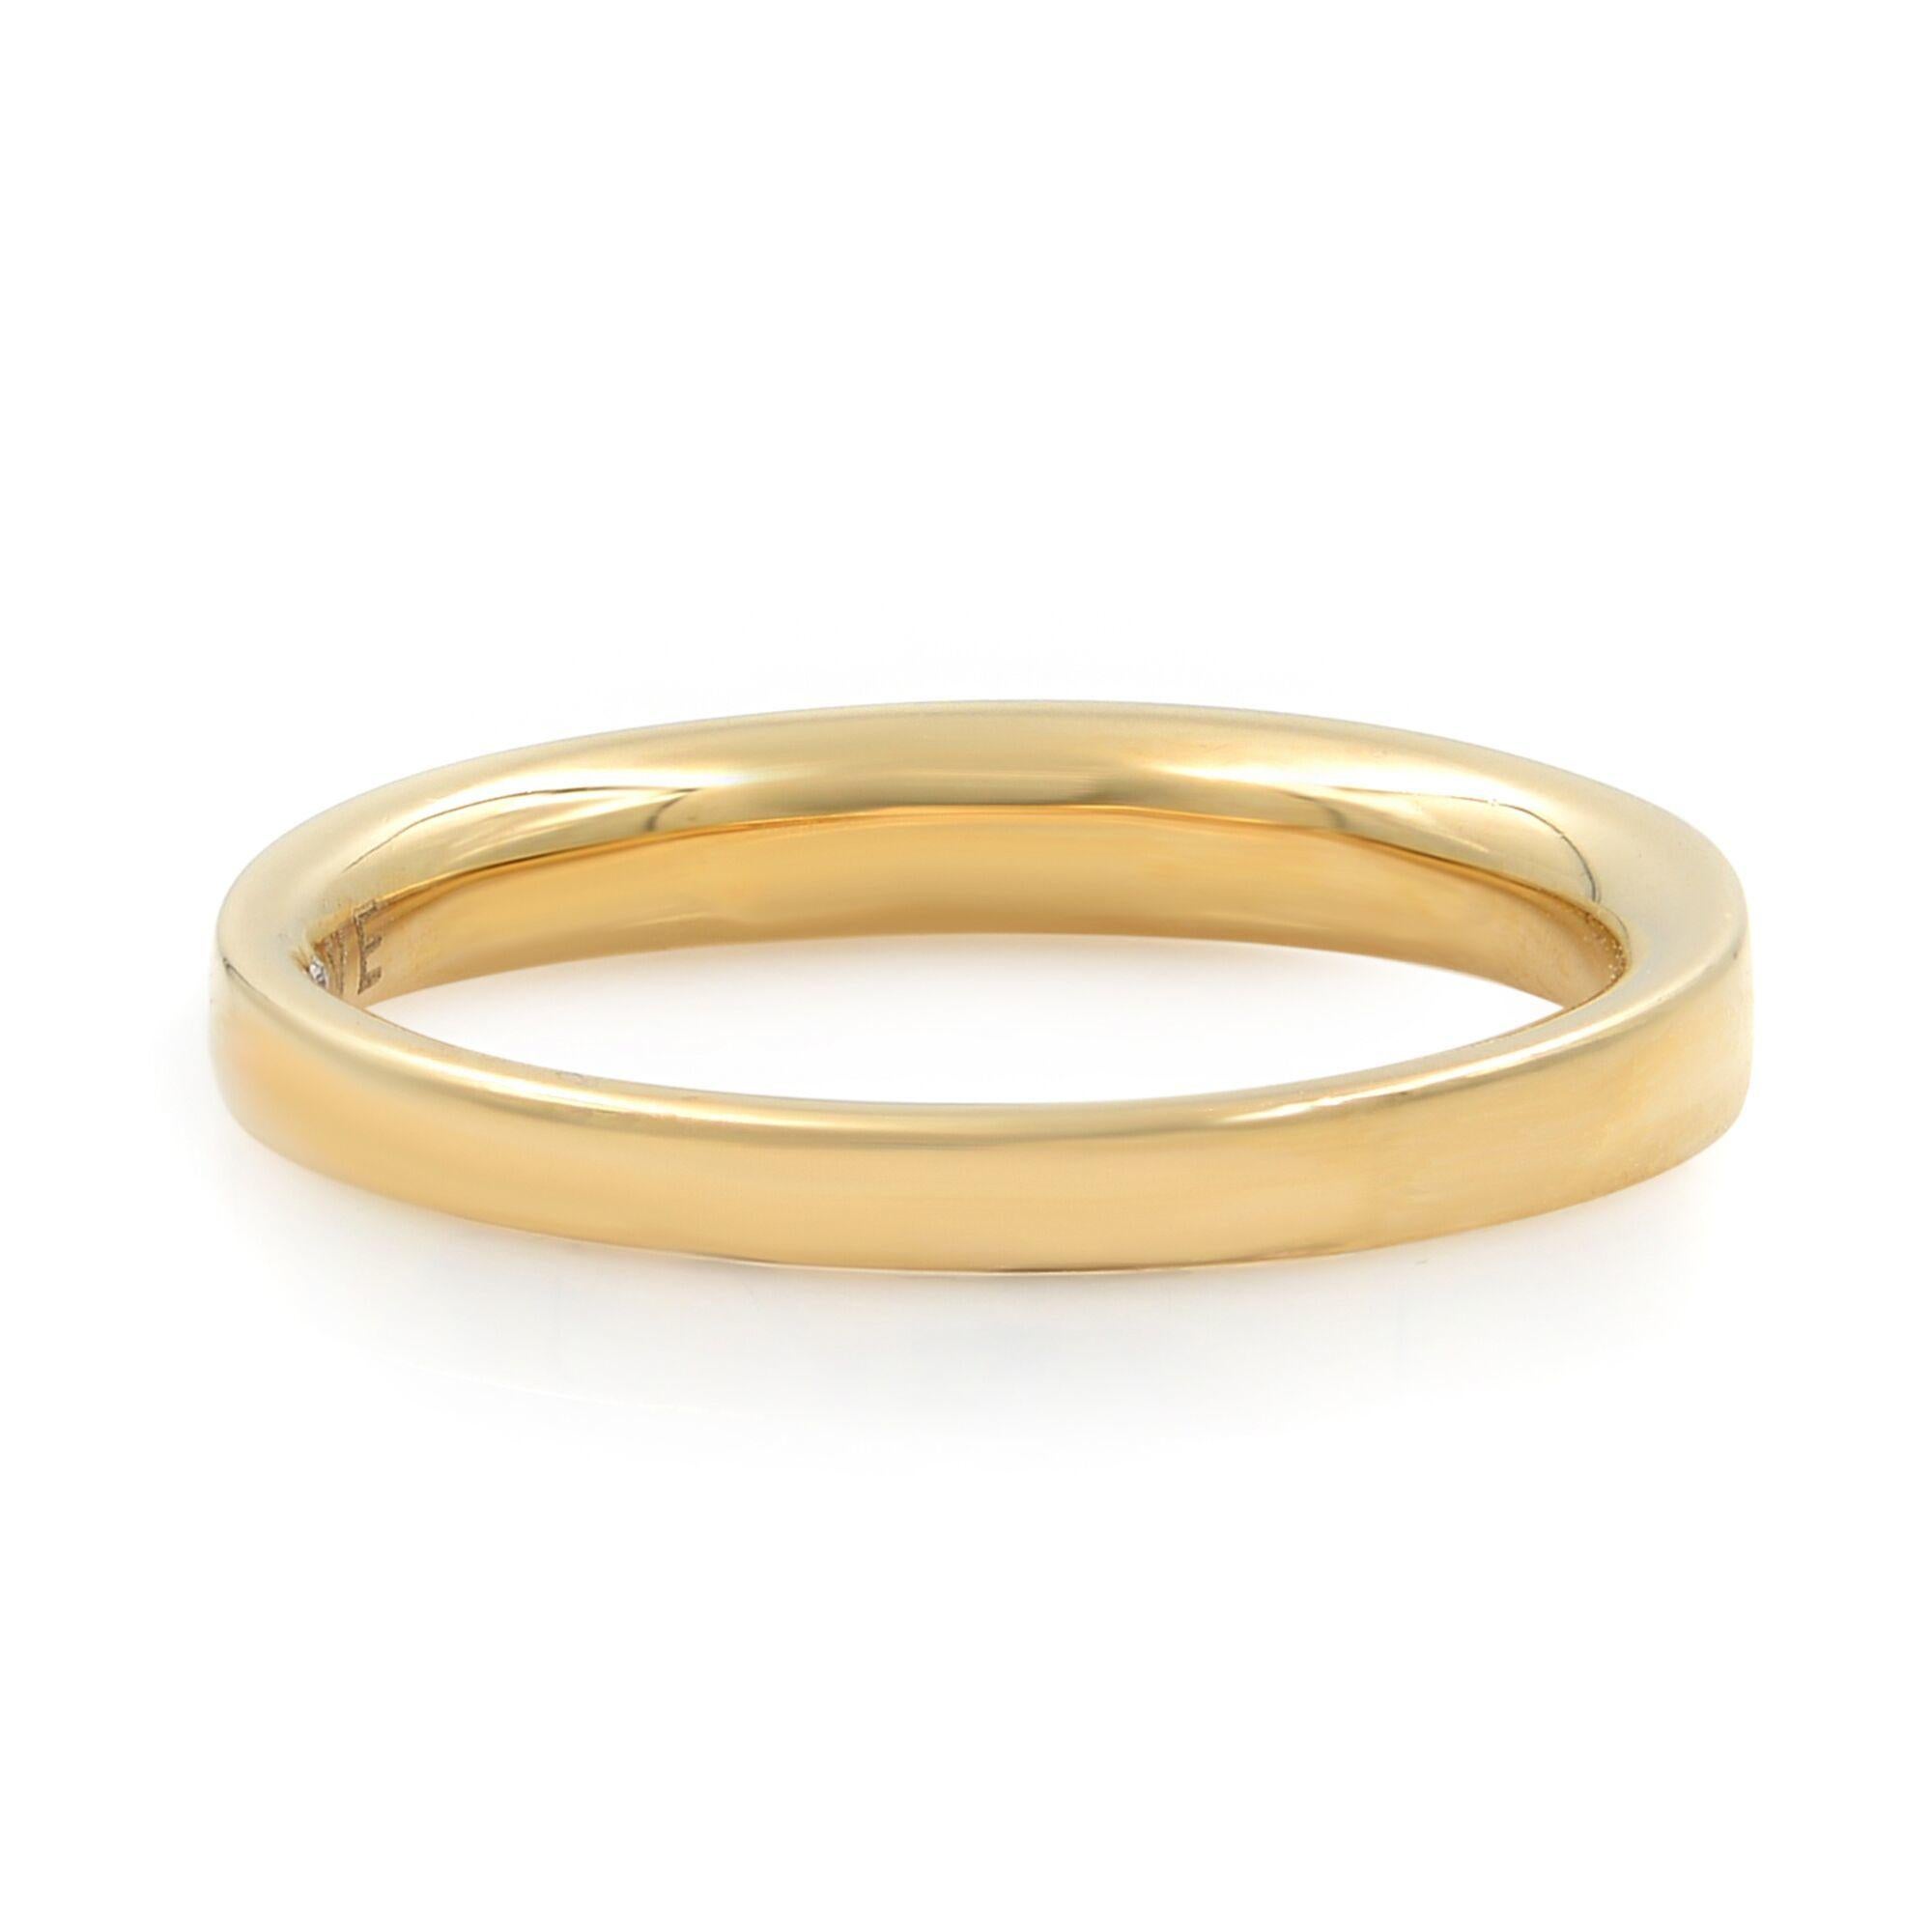 Dieser schöne und zierliche Ring ist aus 14 Karat Gelbgold gefertigt. Er ist mit 4 runden und 6 Baguette-Diamanten in Kanalfassung besetzt. Gesamtgewicht der Diamanten: 0,25ct. Ringgröße: 7. Gesamtgewicht: 3,3 g. Wird in einer hübschen Geschenkbox